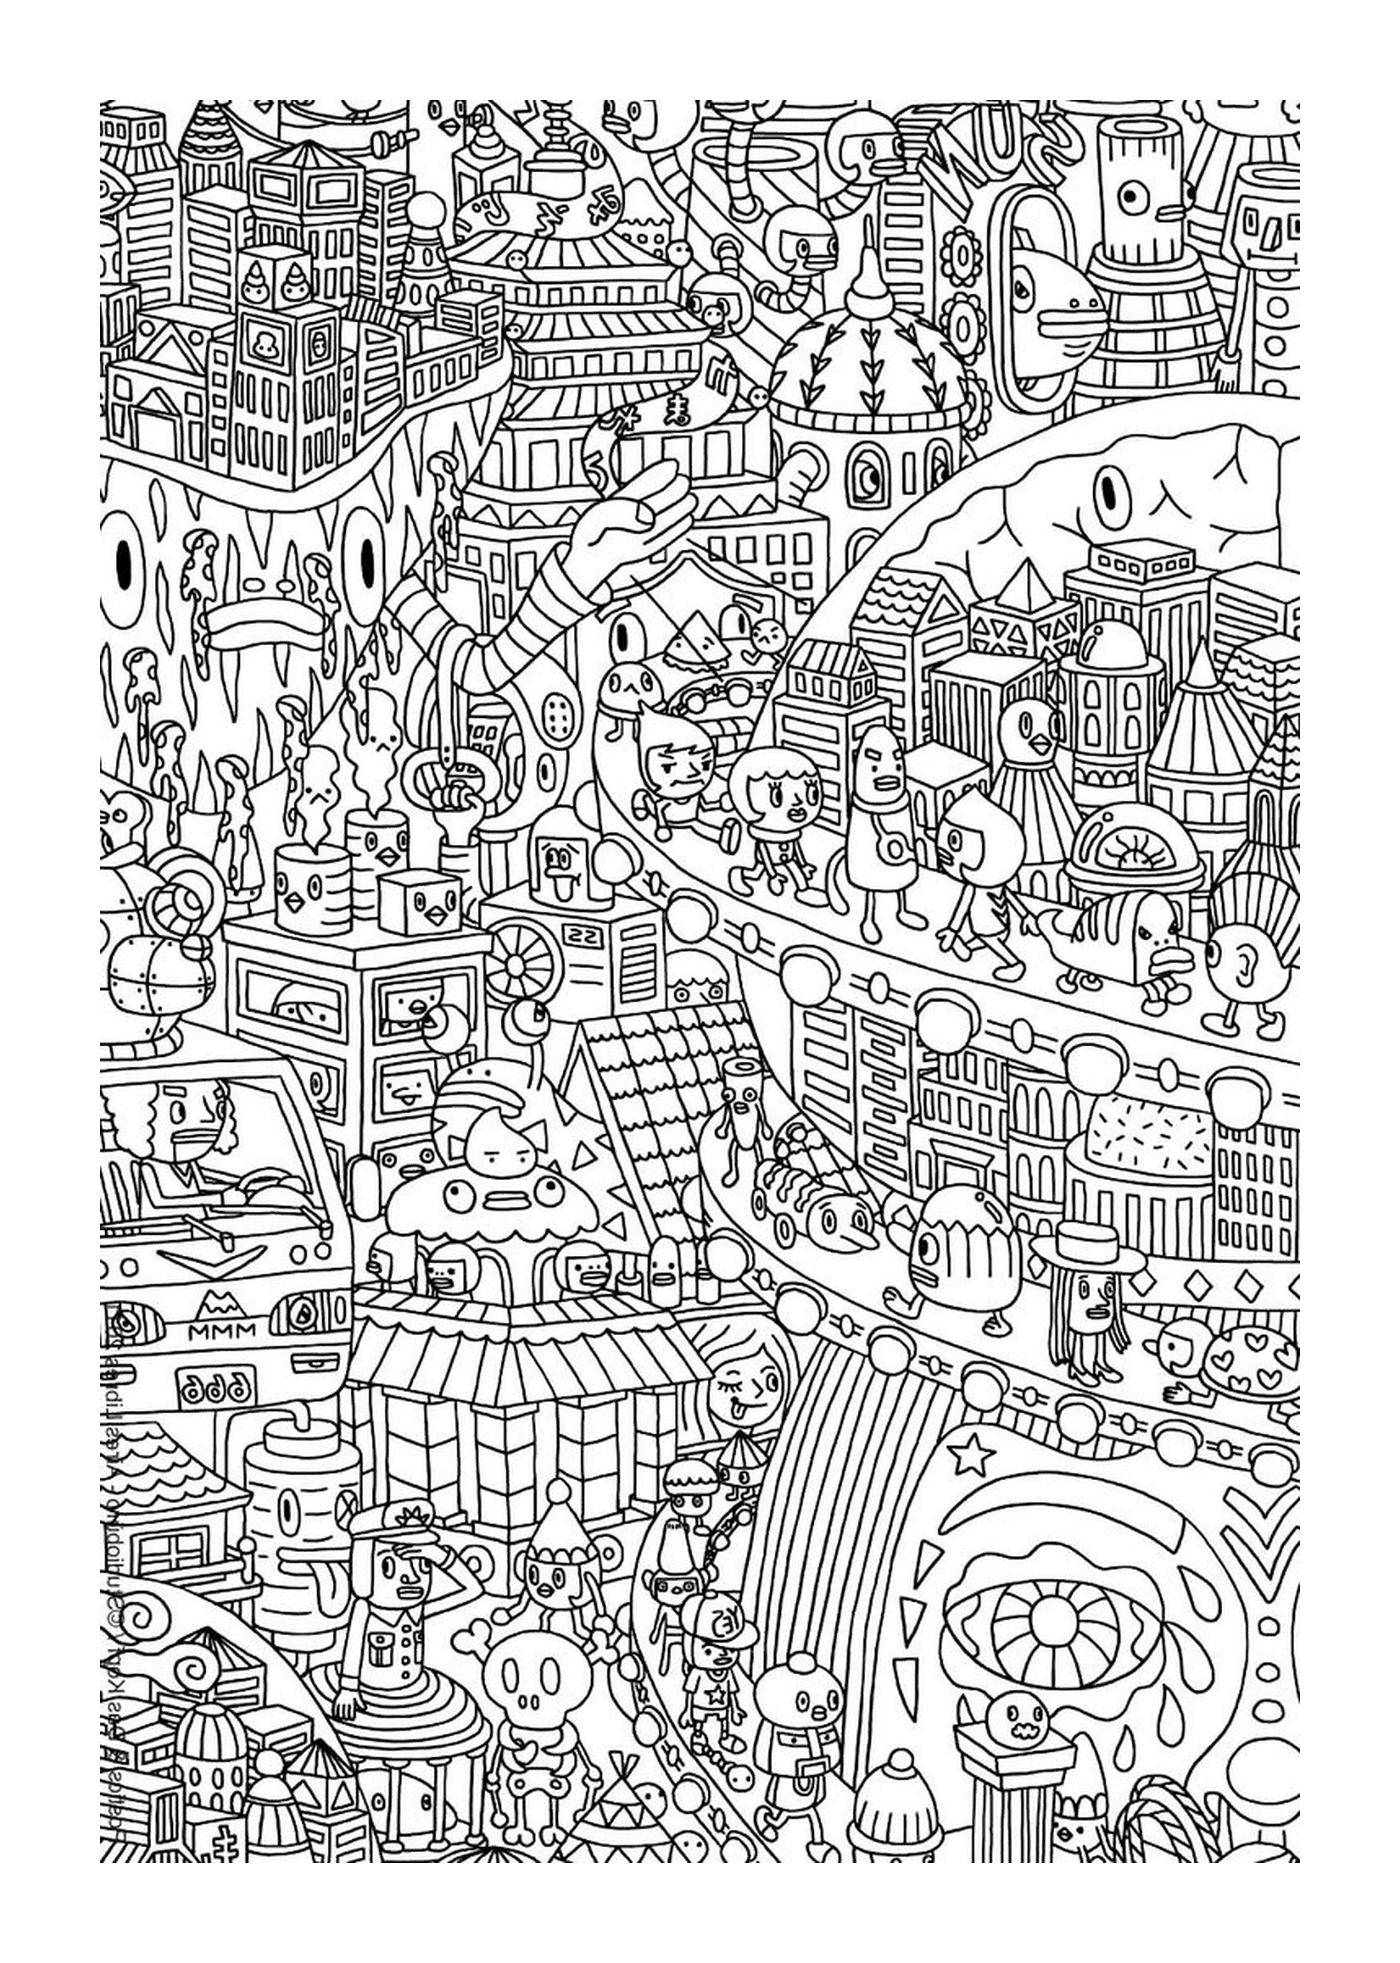  Desenho de uma cidade 